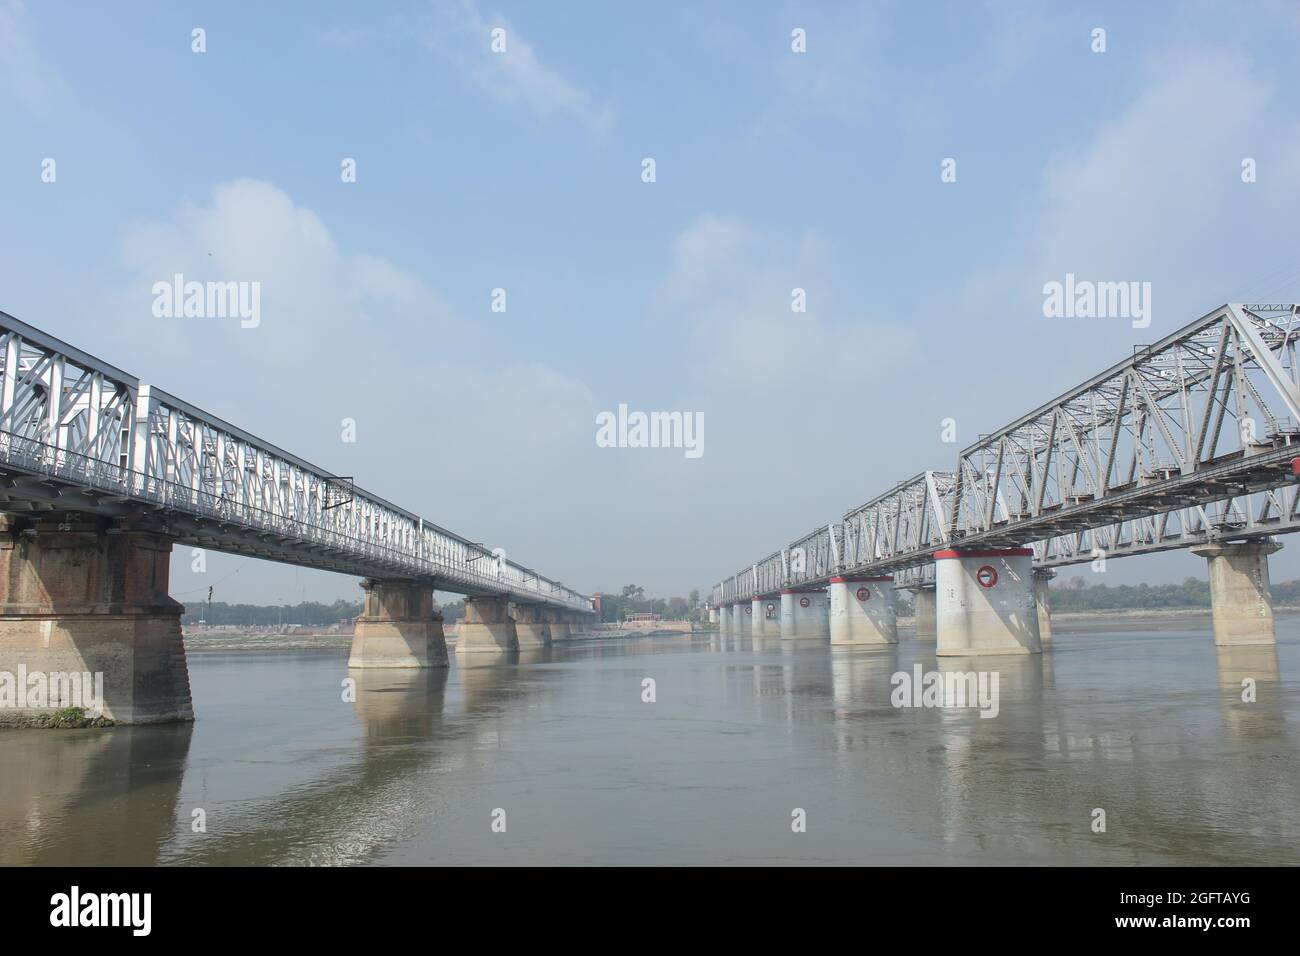 Le pont des chemins de fer indiens dans le Bihar, et les travailleurs de chemin de fer travaillant sur la voie. Banque D'Images